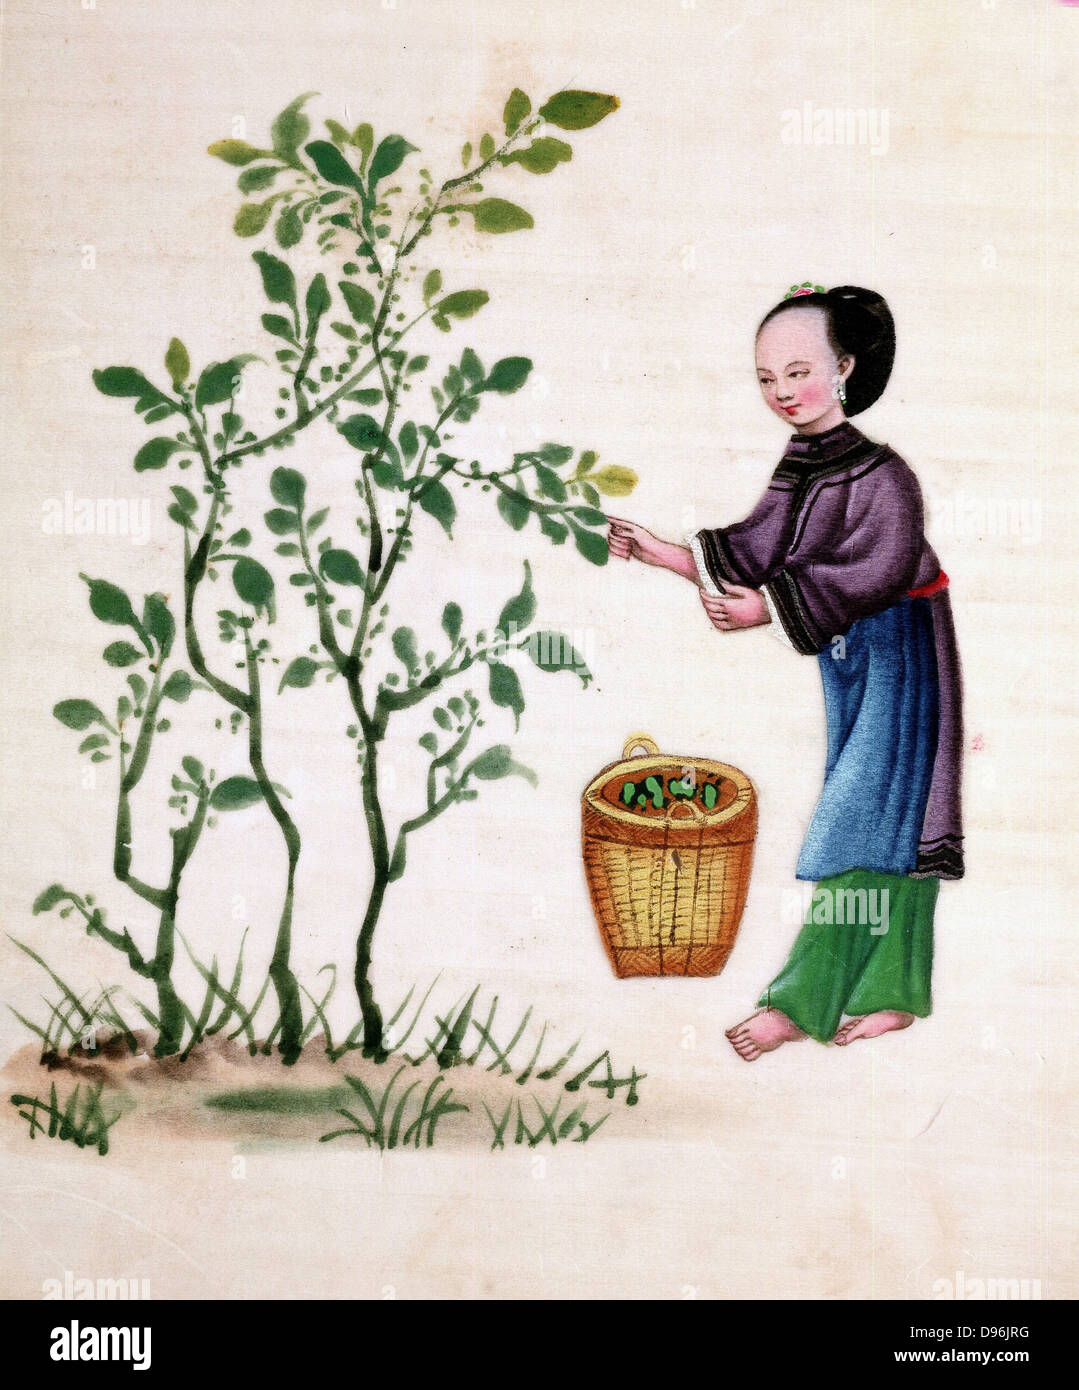 Sammeln von Maulbeere überlässt Seidenraupen ernähren. Chinesische Malerei auf Reispapier. 19. Jahrhundert Stockfoto